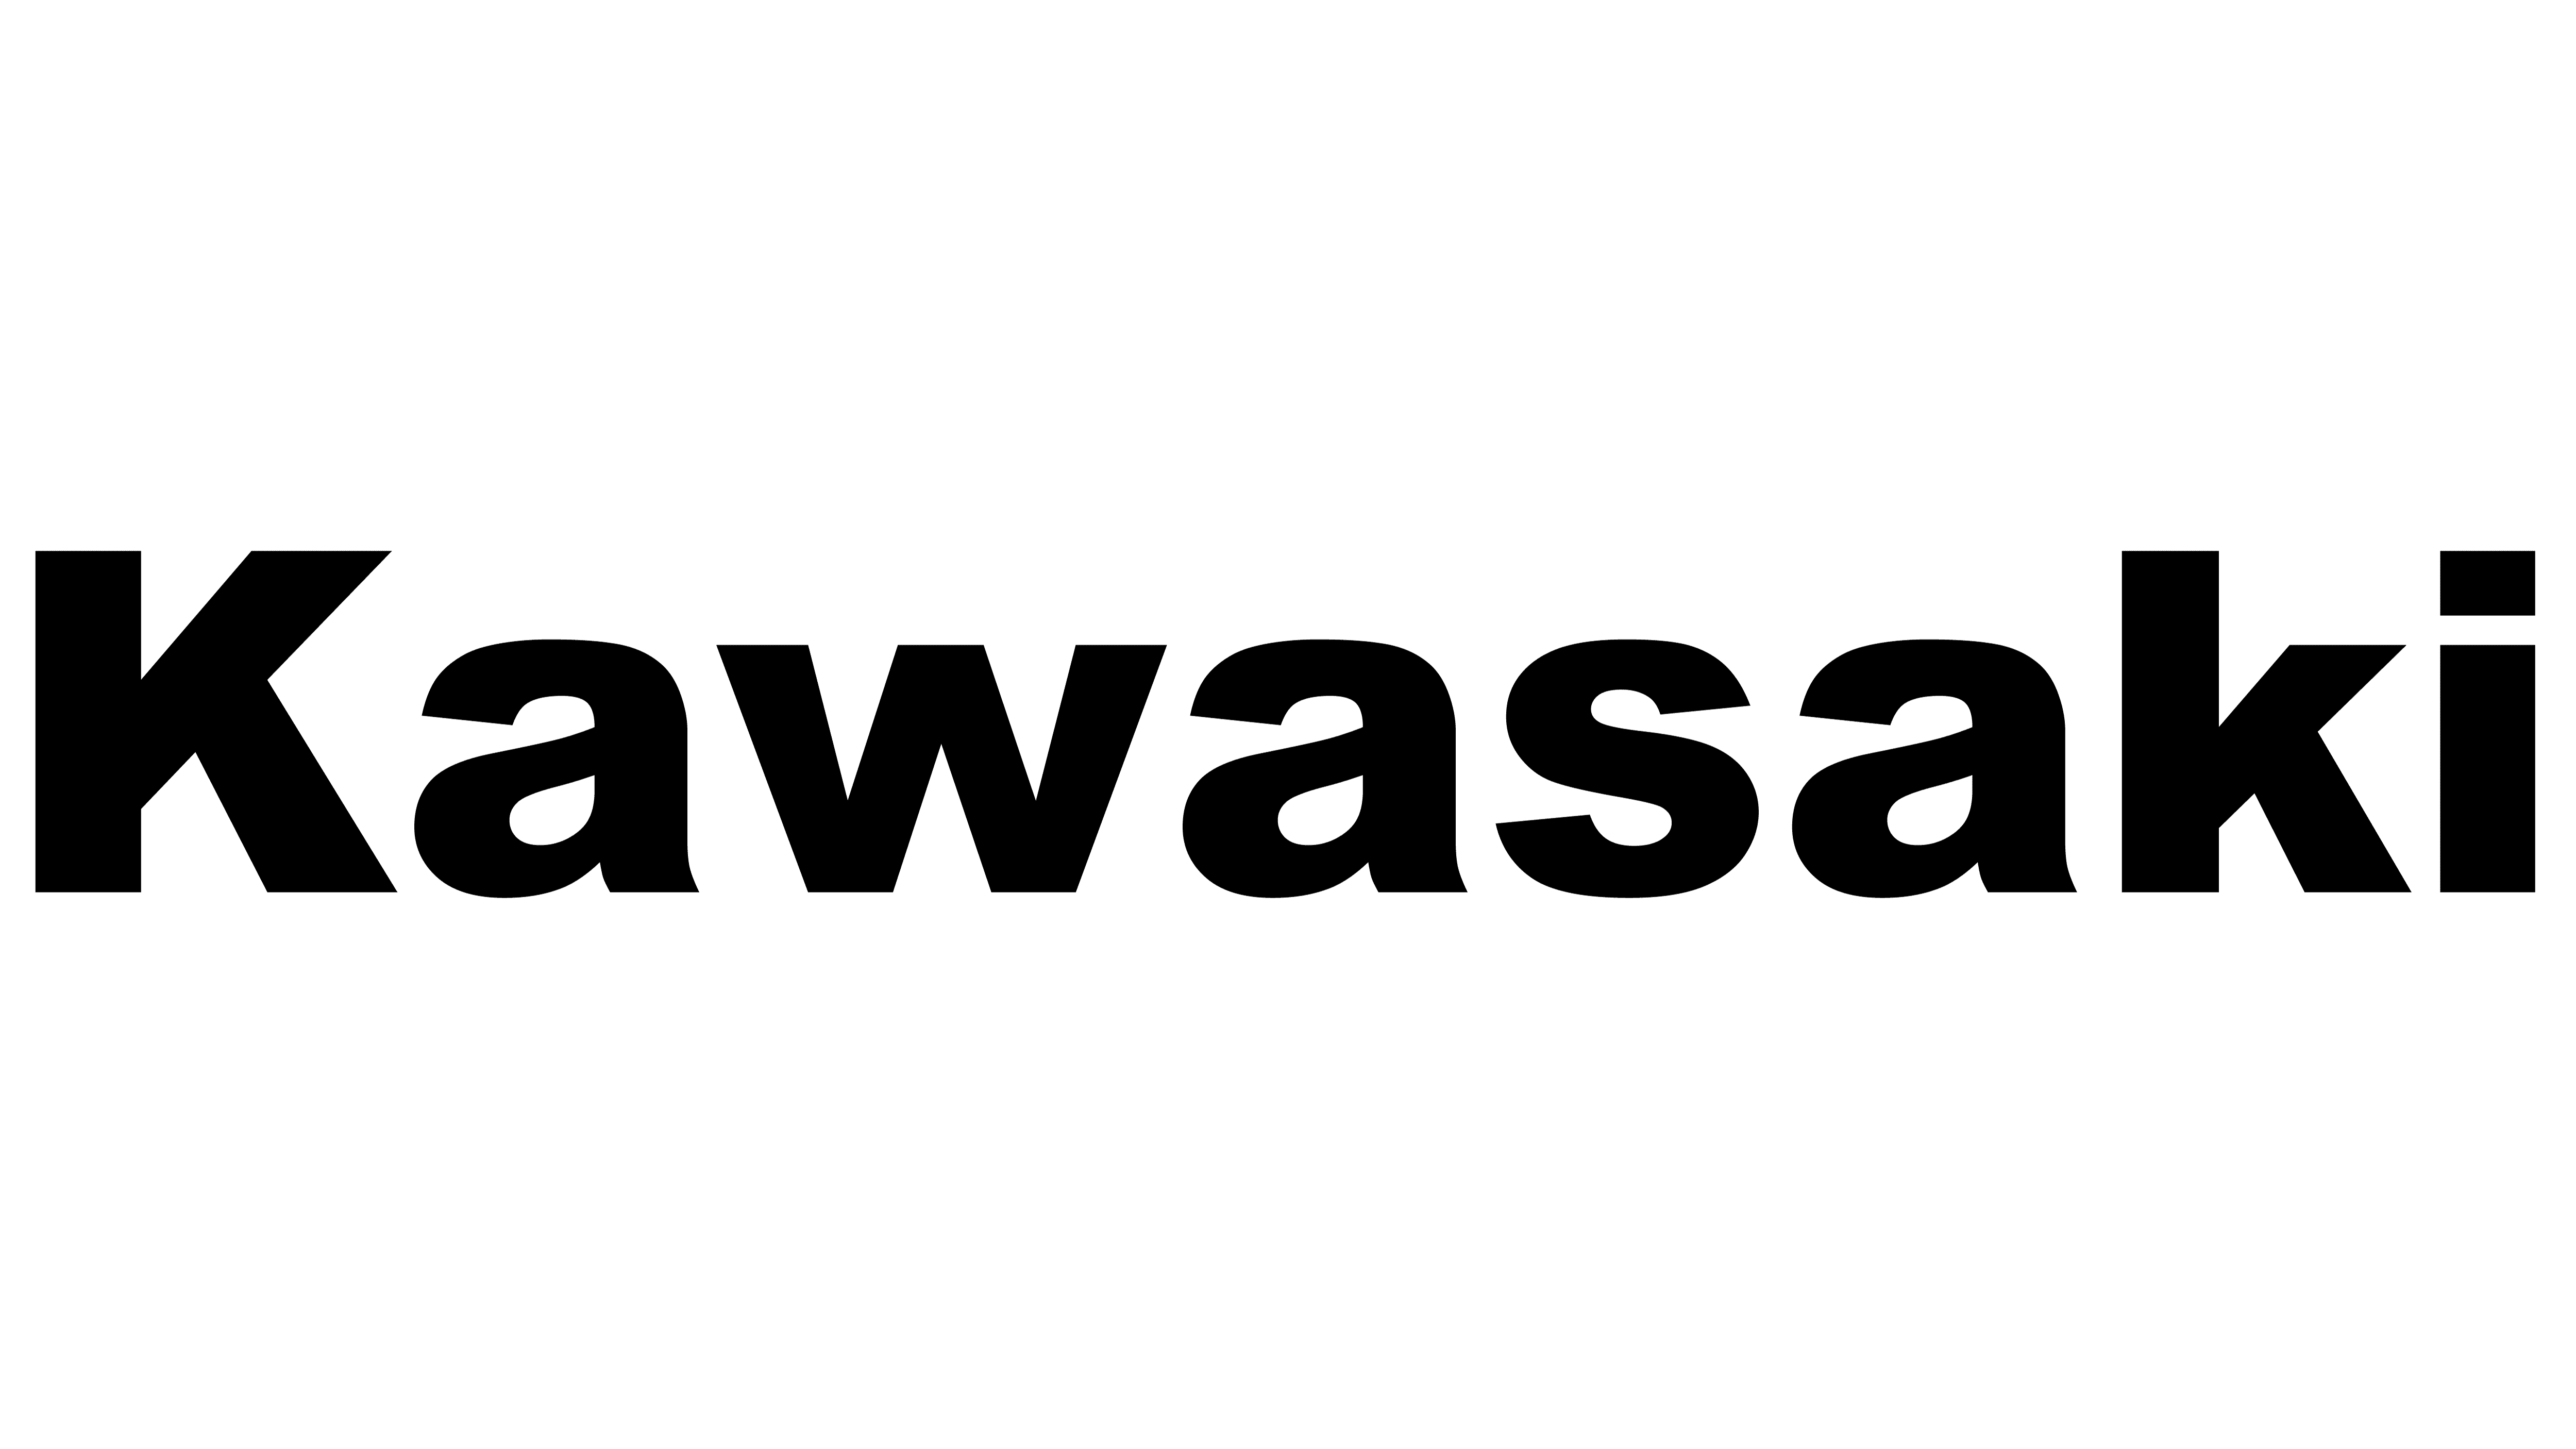 kawasaki logo and symbol meaning history png kawasaki logo and symbol meaning